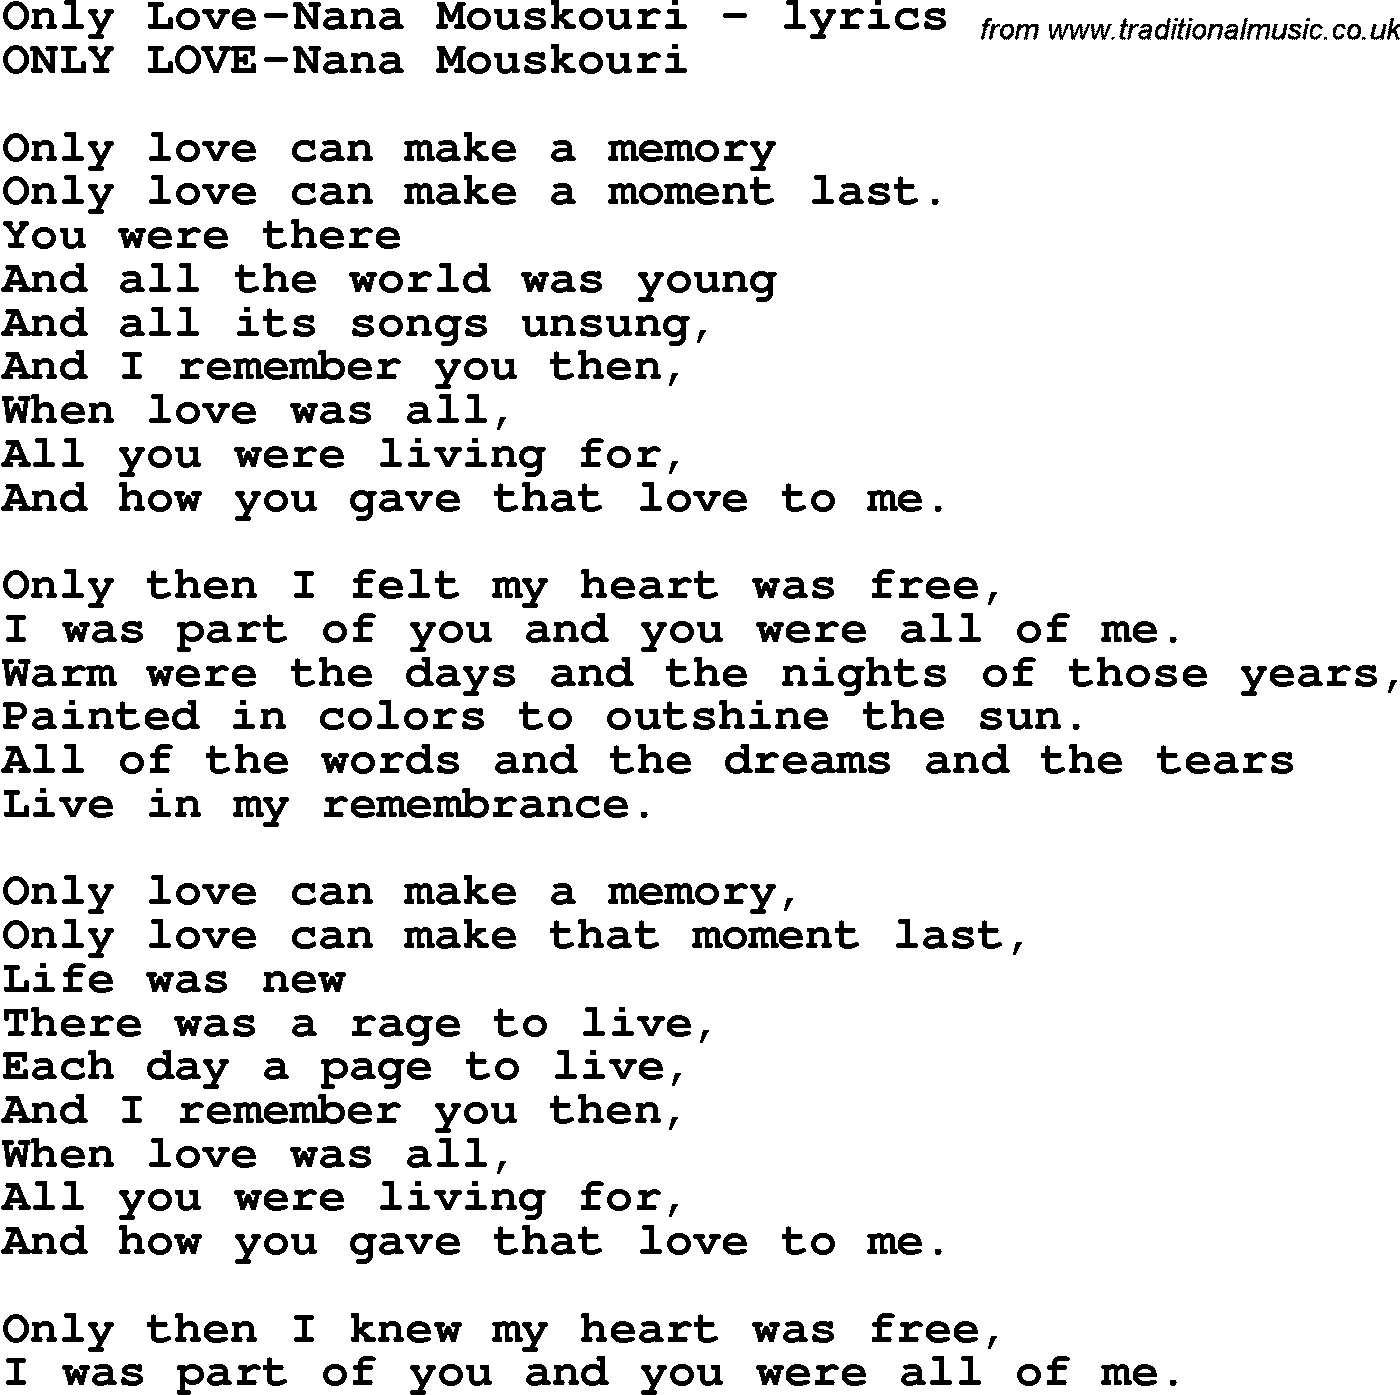 Love Song Lyrics for: Only Love-Nana Mouskouri